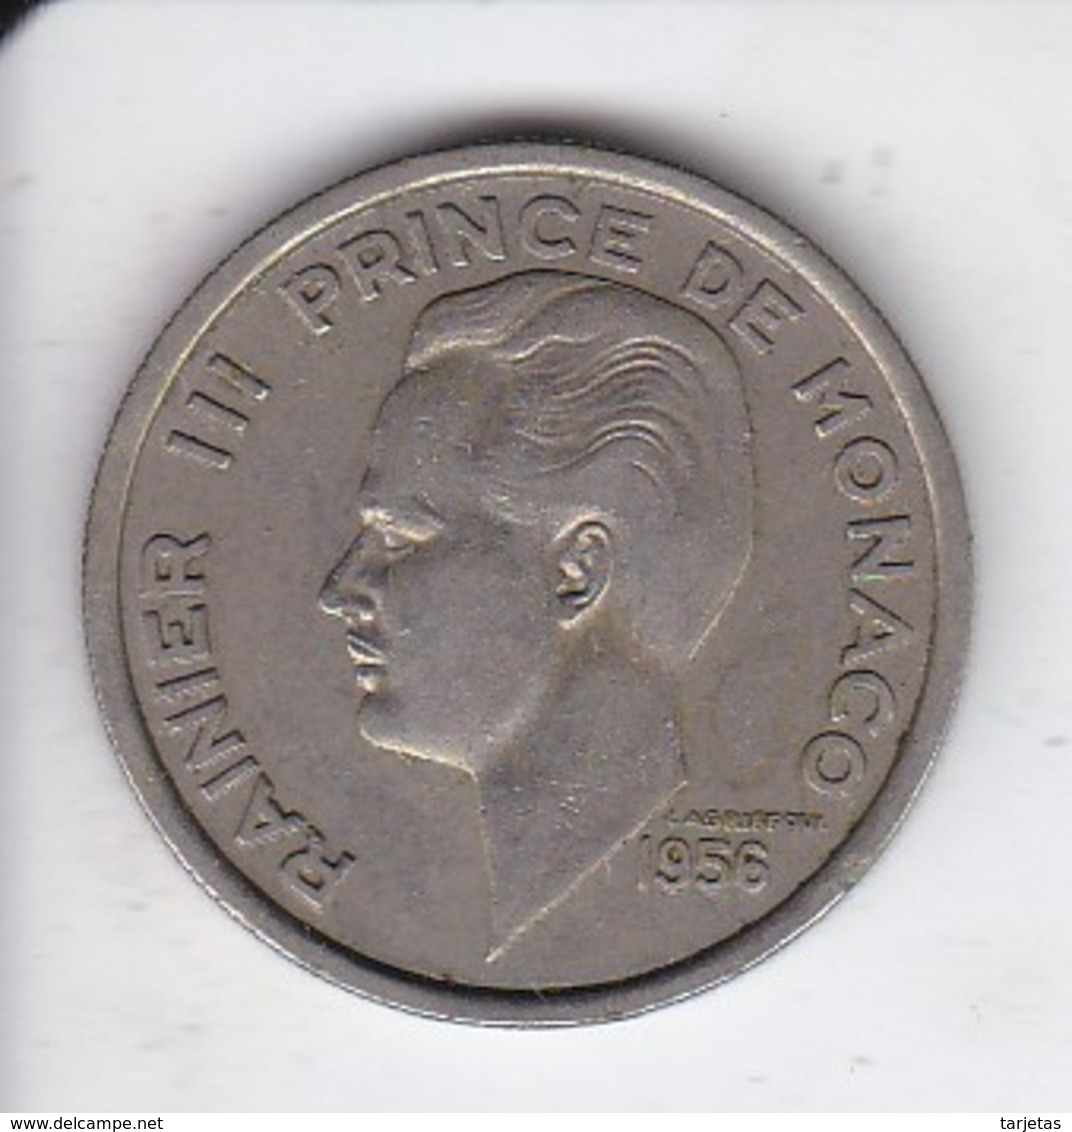 MONEDA DE MONACO DE 100 FRANCS DEL AÑO 1956 (COIN) RAINIER III - 1949-1956 Franchi Antichi